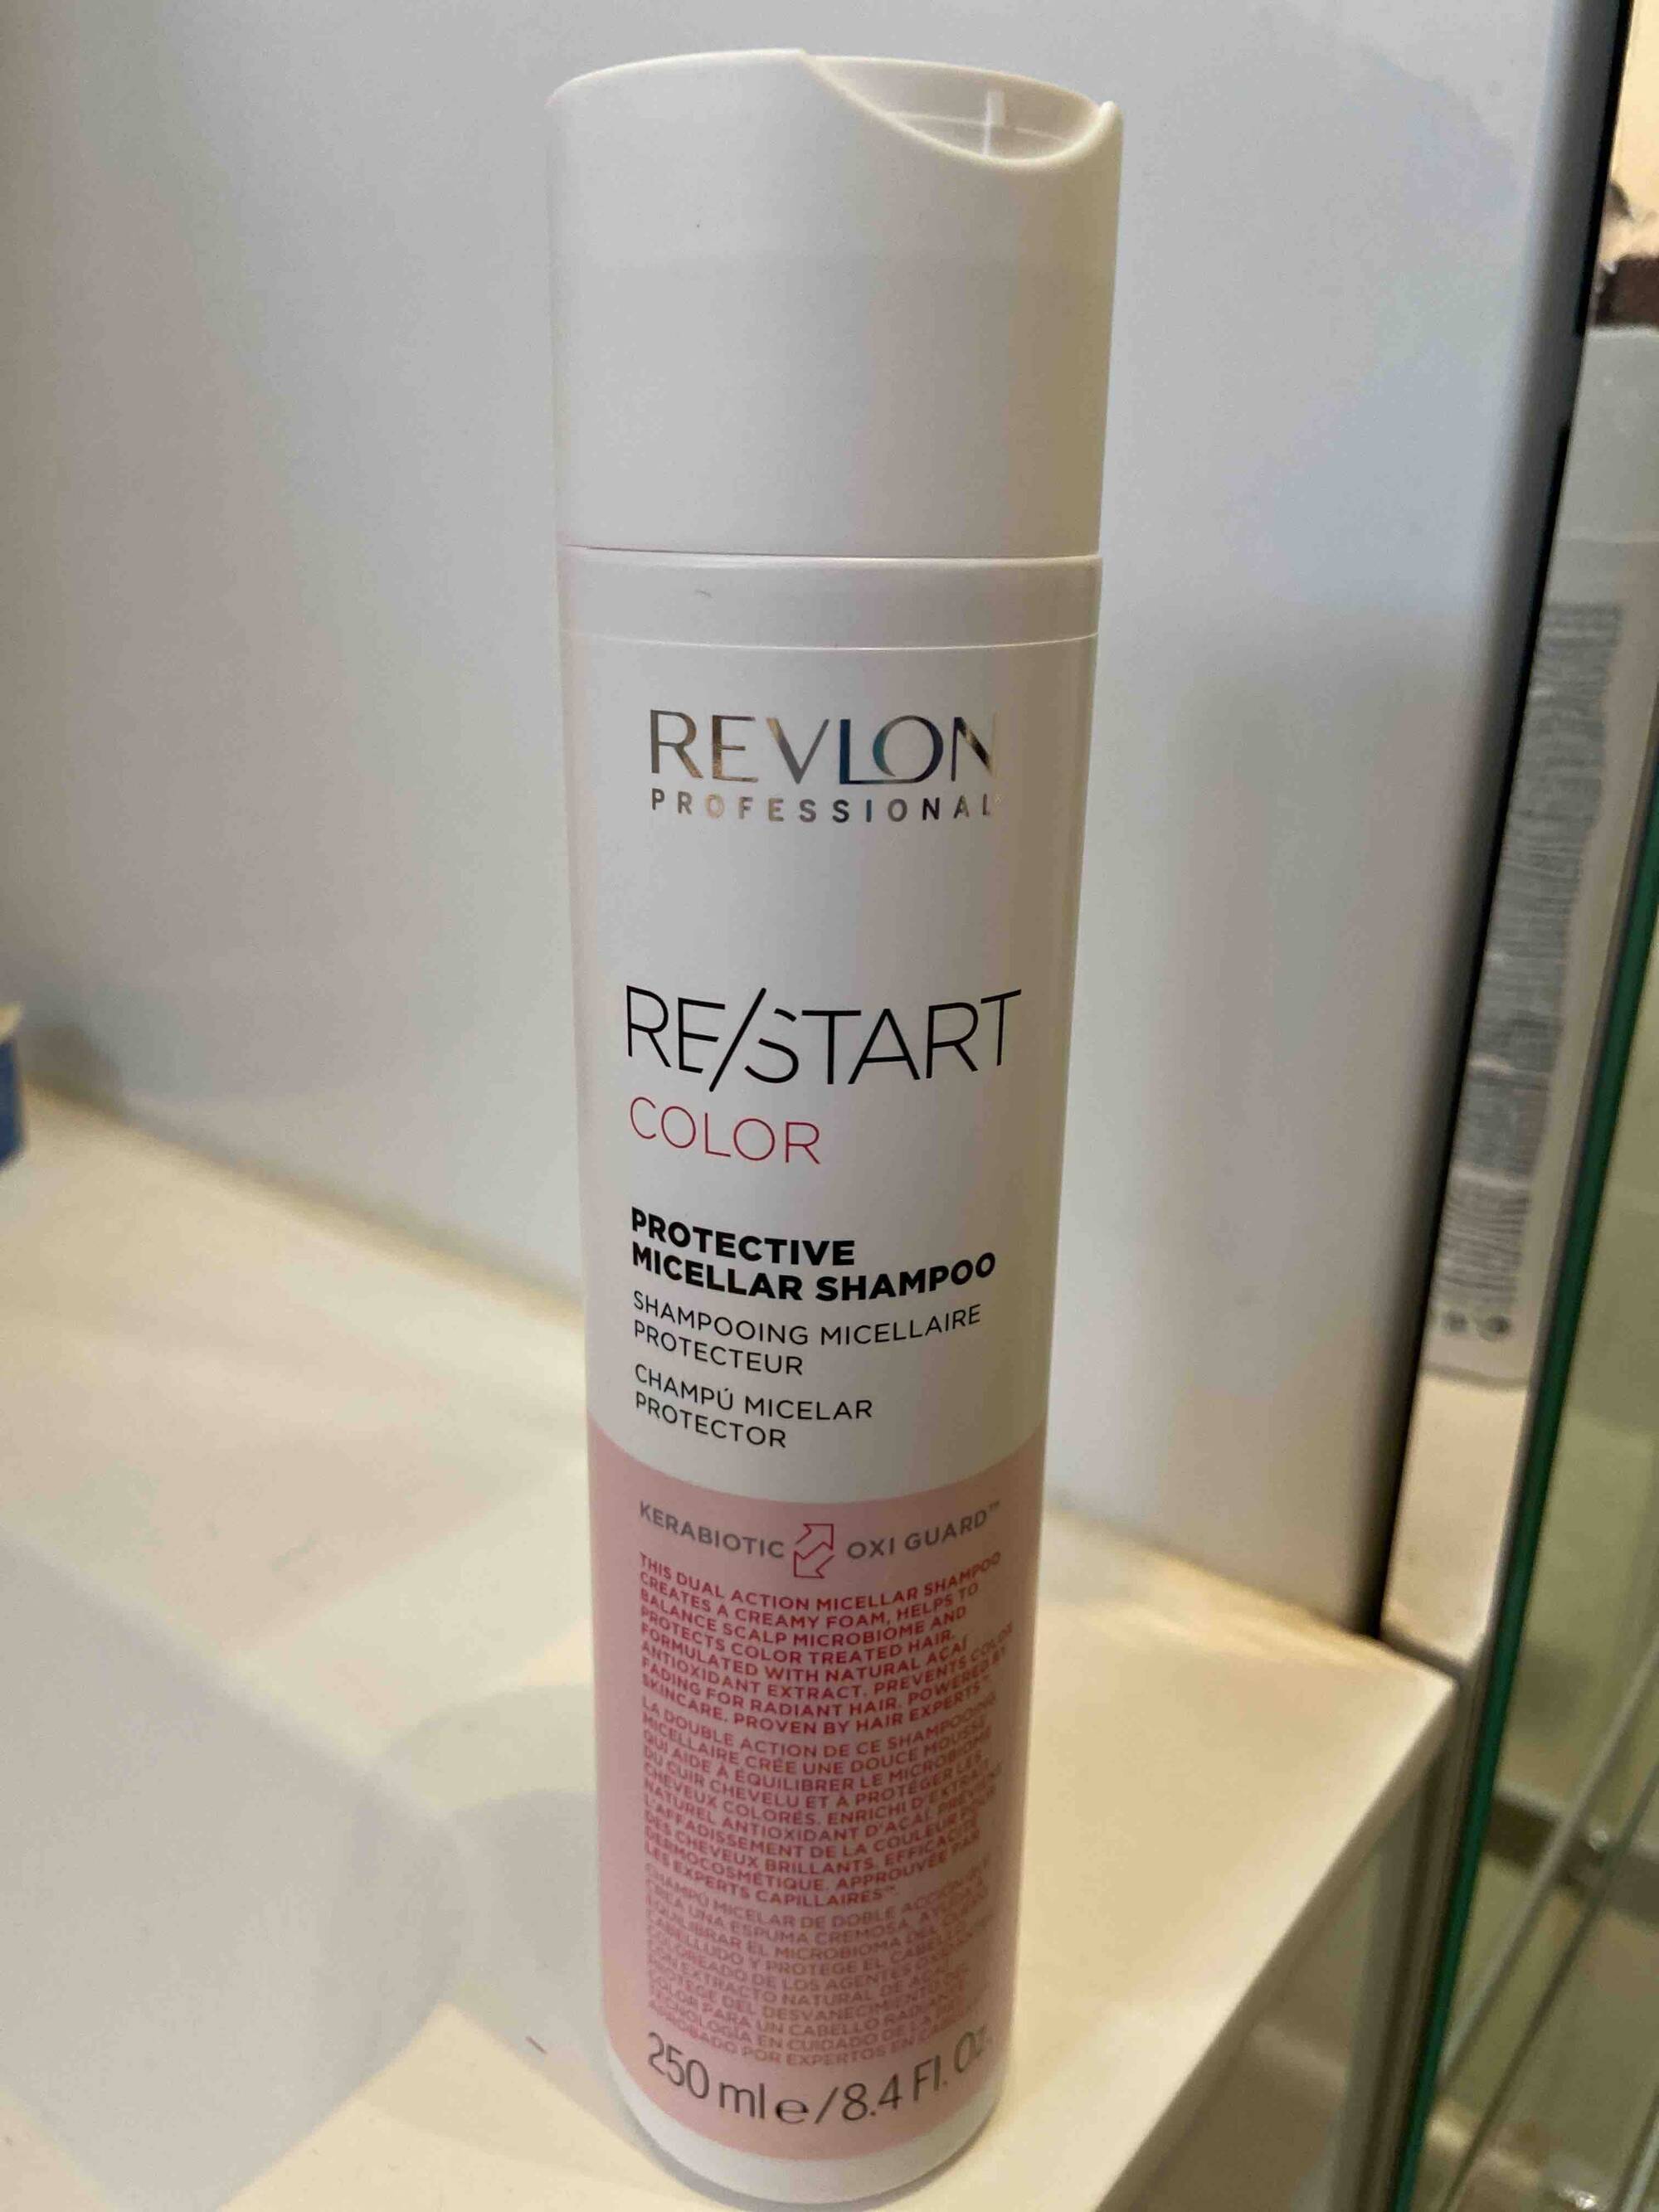 REVLON - Re/start color - Shampooing micellaire protecteur